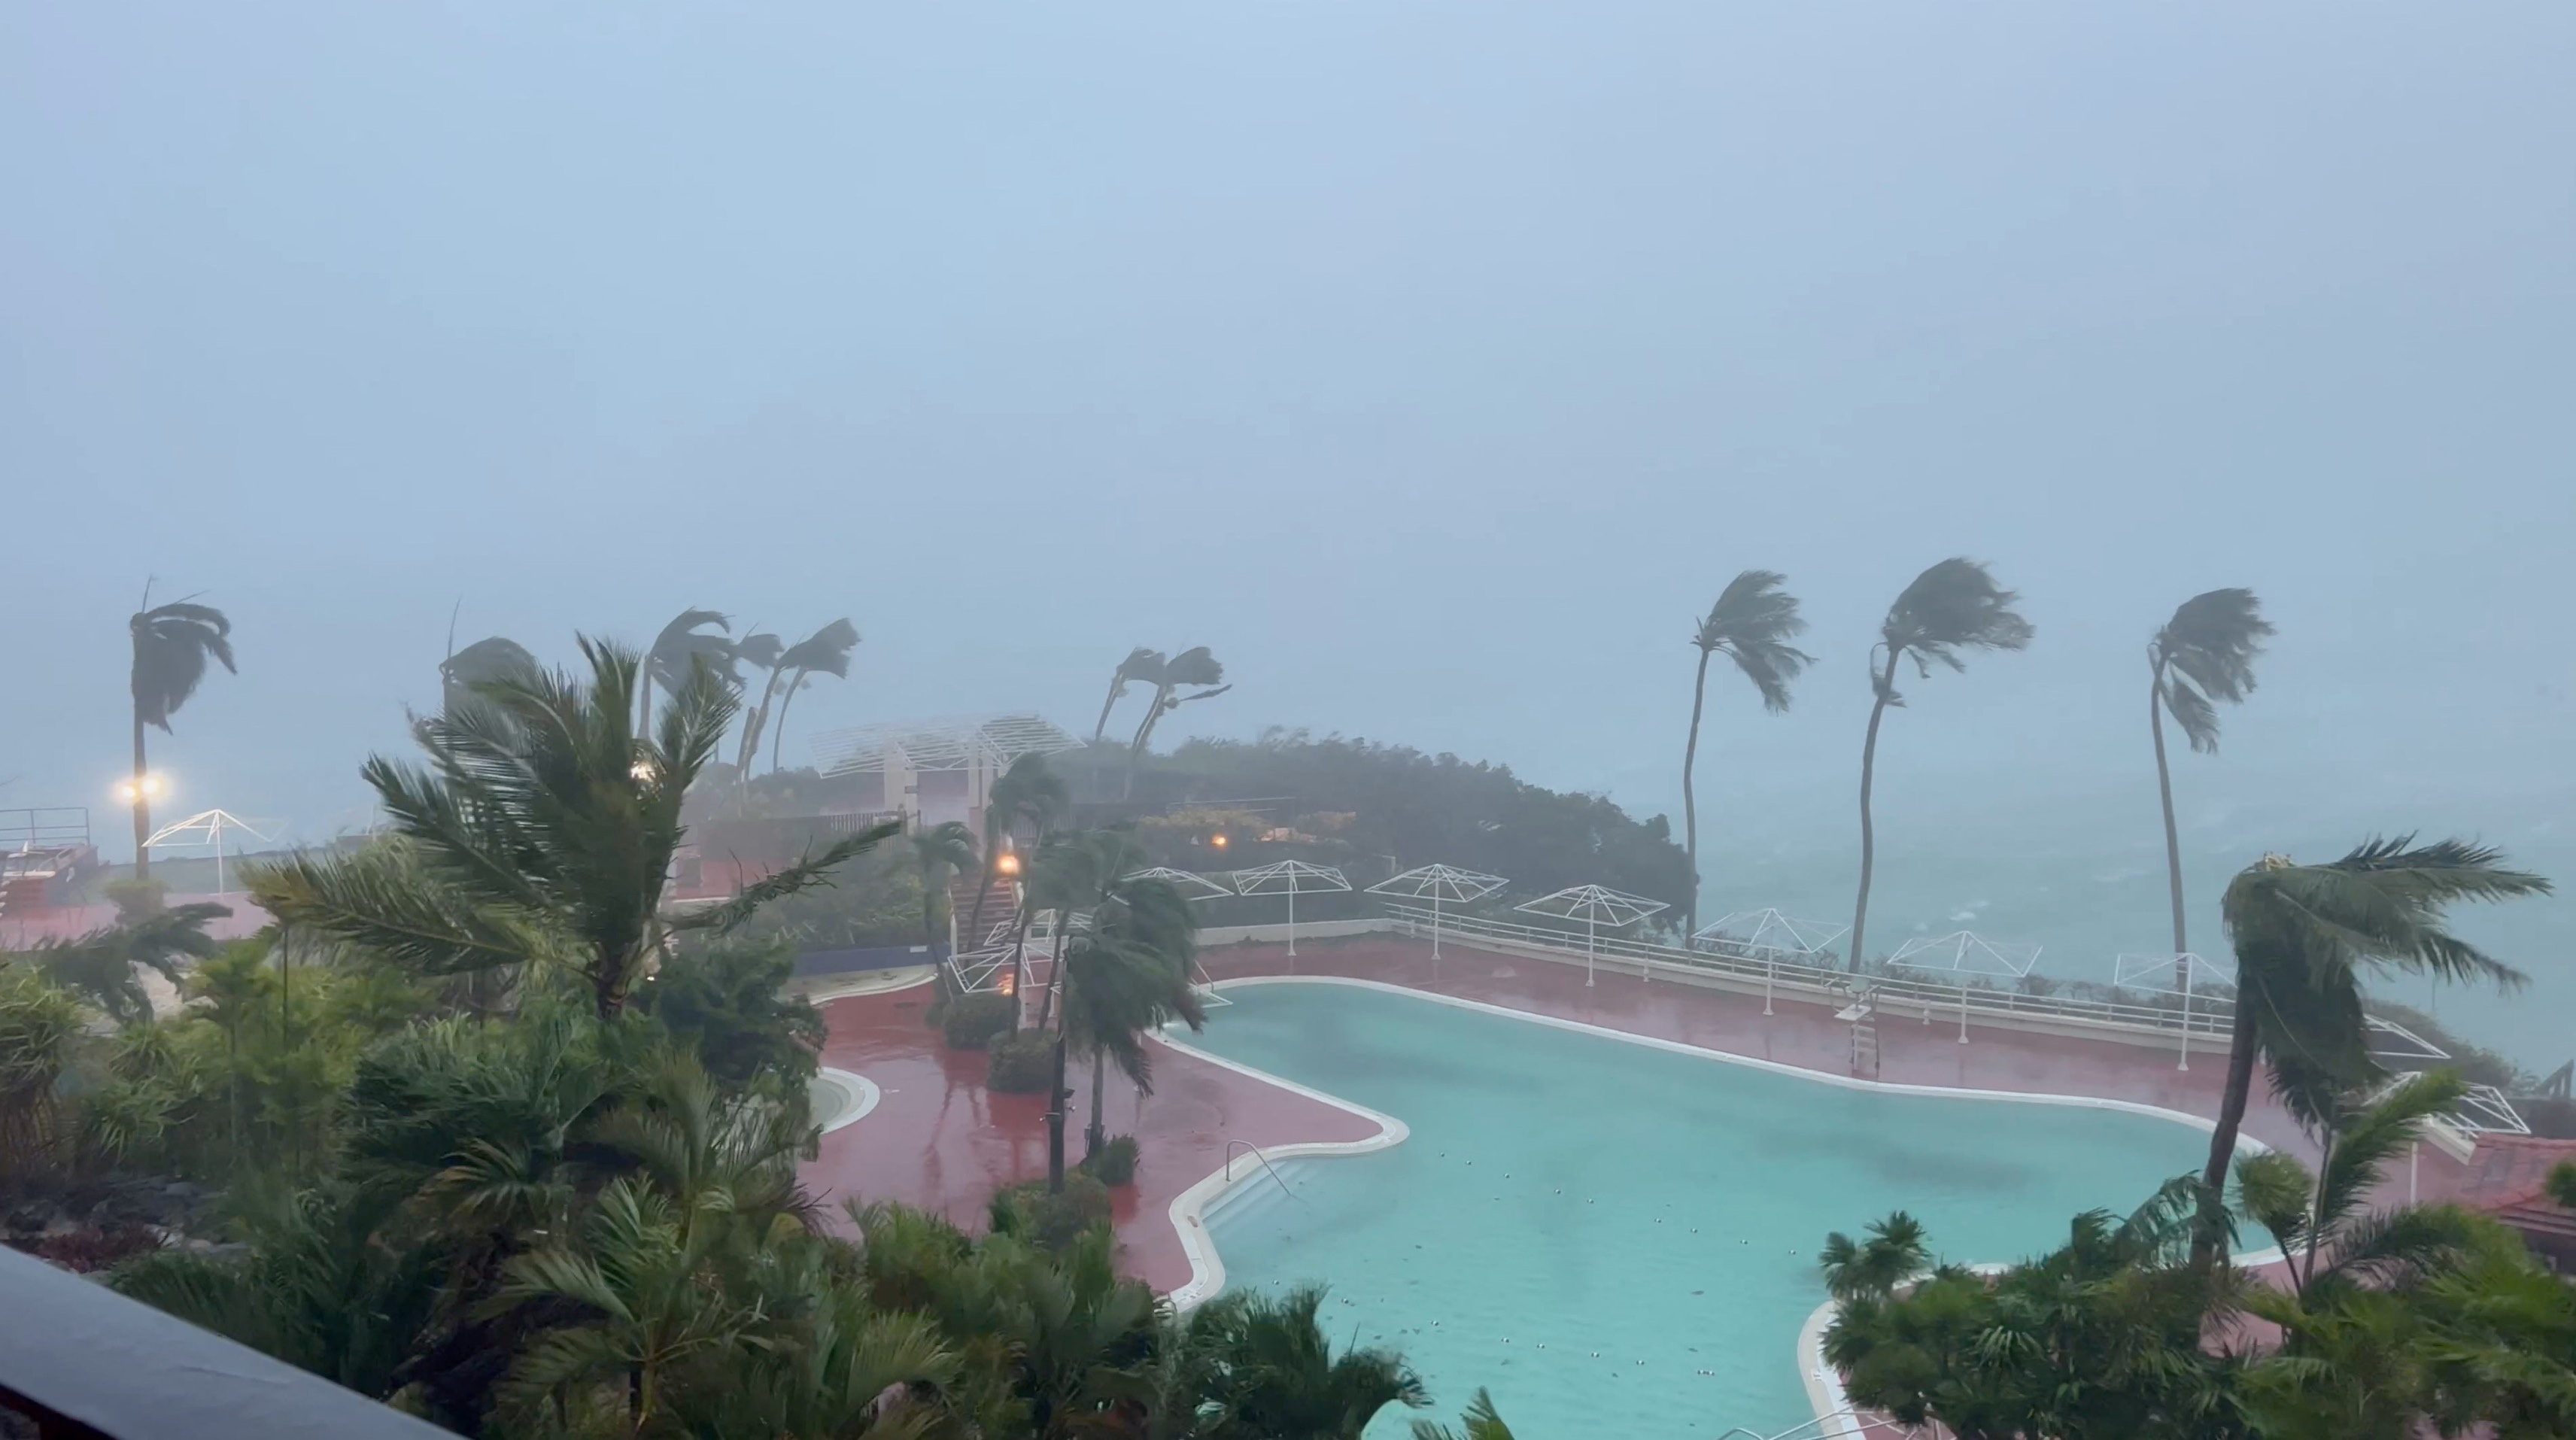 超強颱風「瑪娃」掠過關島 98%用戶供電中斷